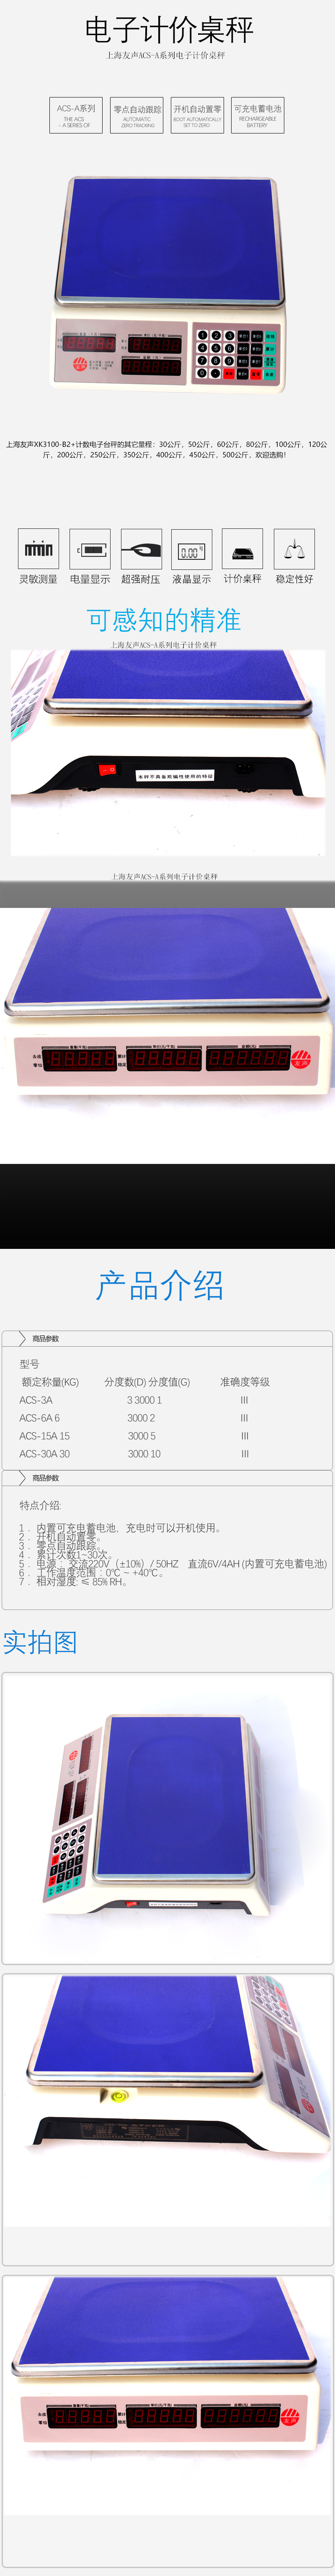 上海友声ACS-A系列电子计价桌秤.jpg